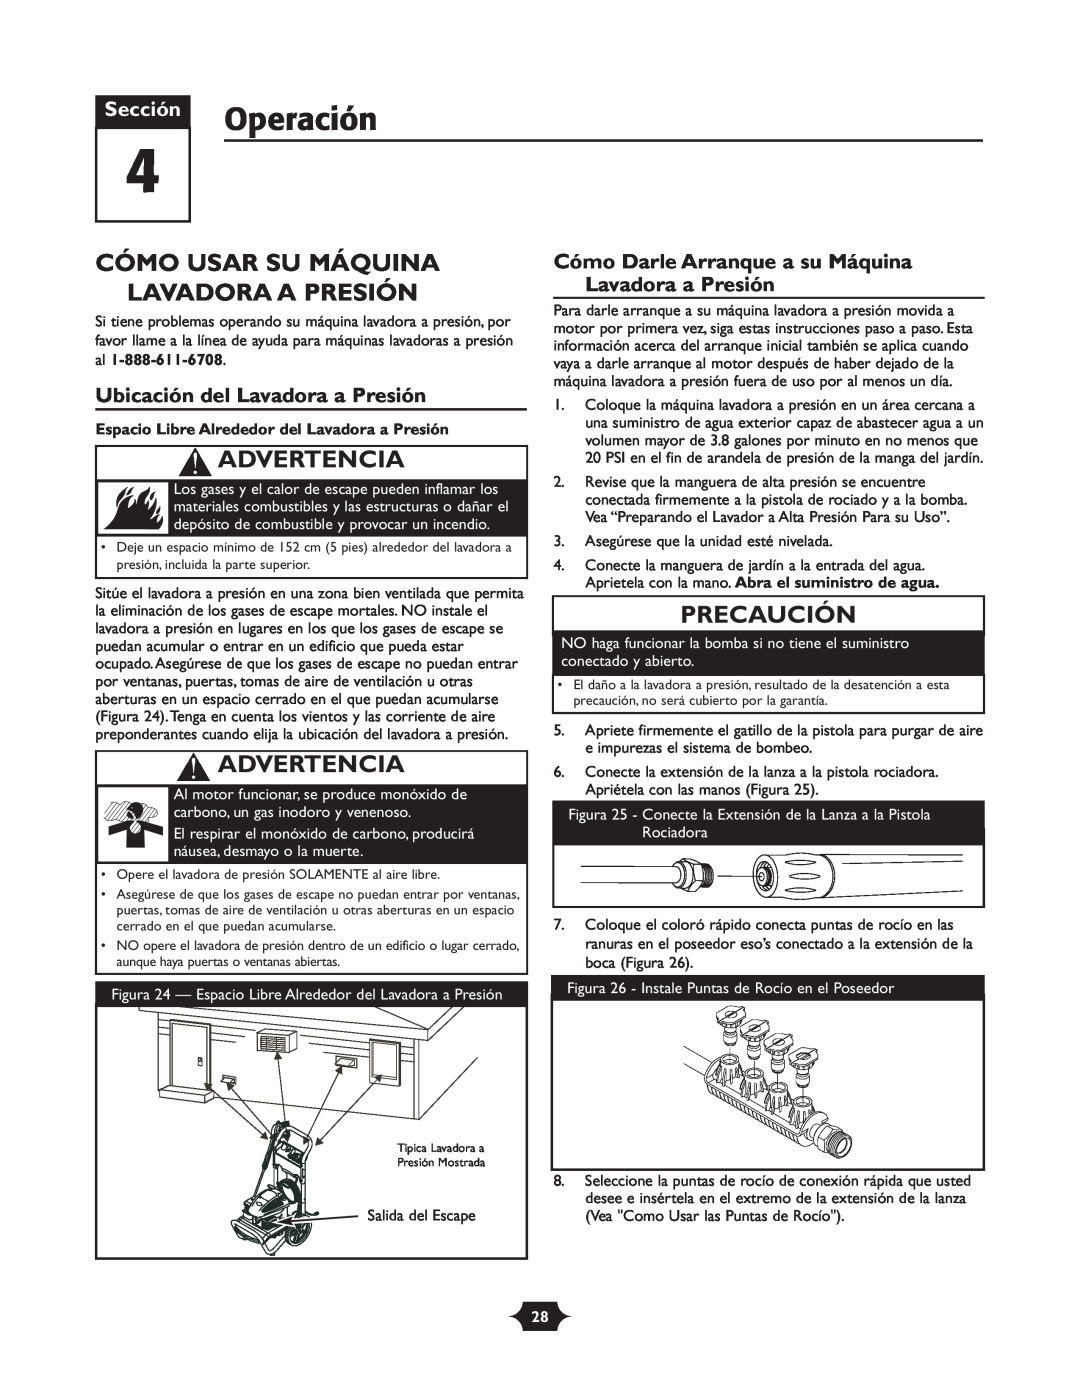 Troy-Bilt 020242-4 manual Operación, Cómo Usar Su Máquina Lavadora A Presión, Ubicación del Lavadora a Presión, Advertencia 